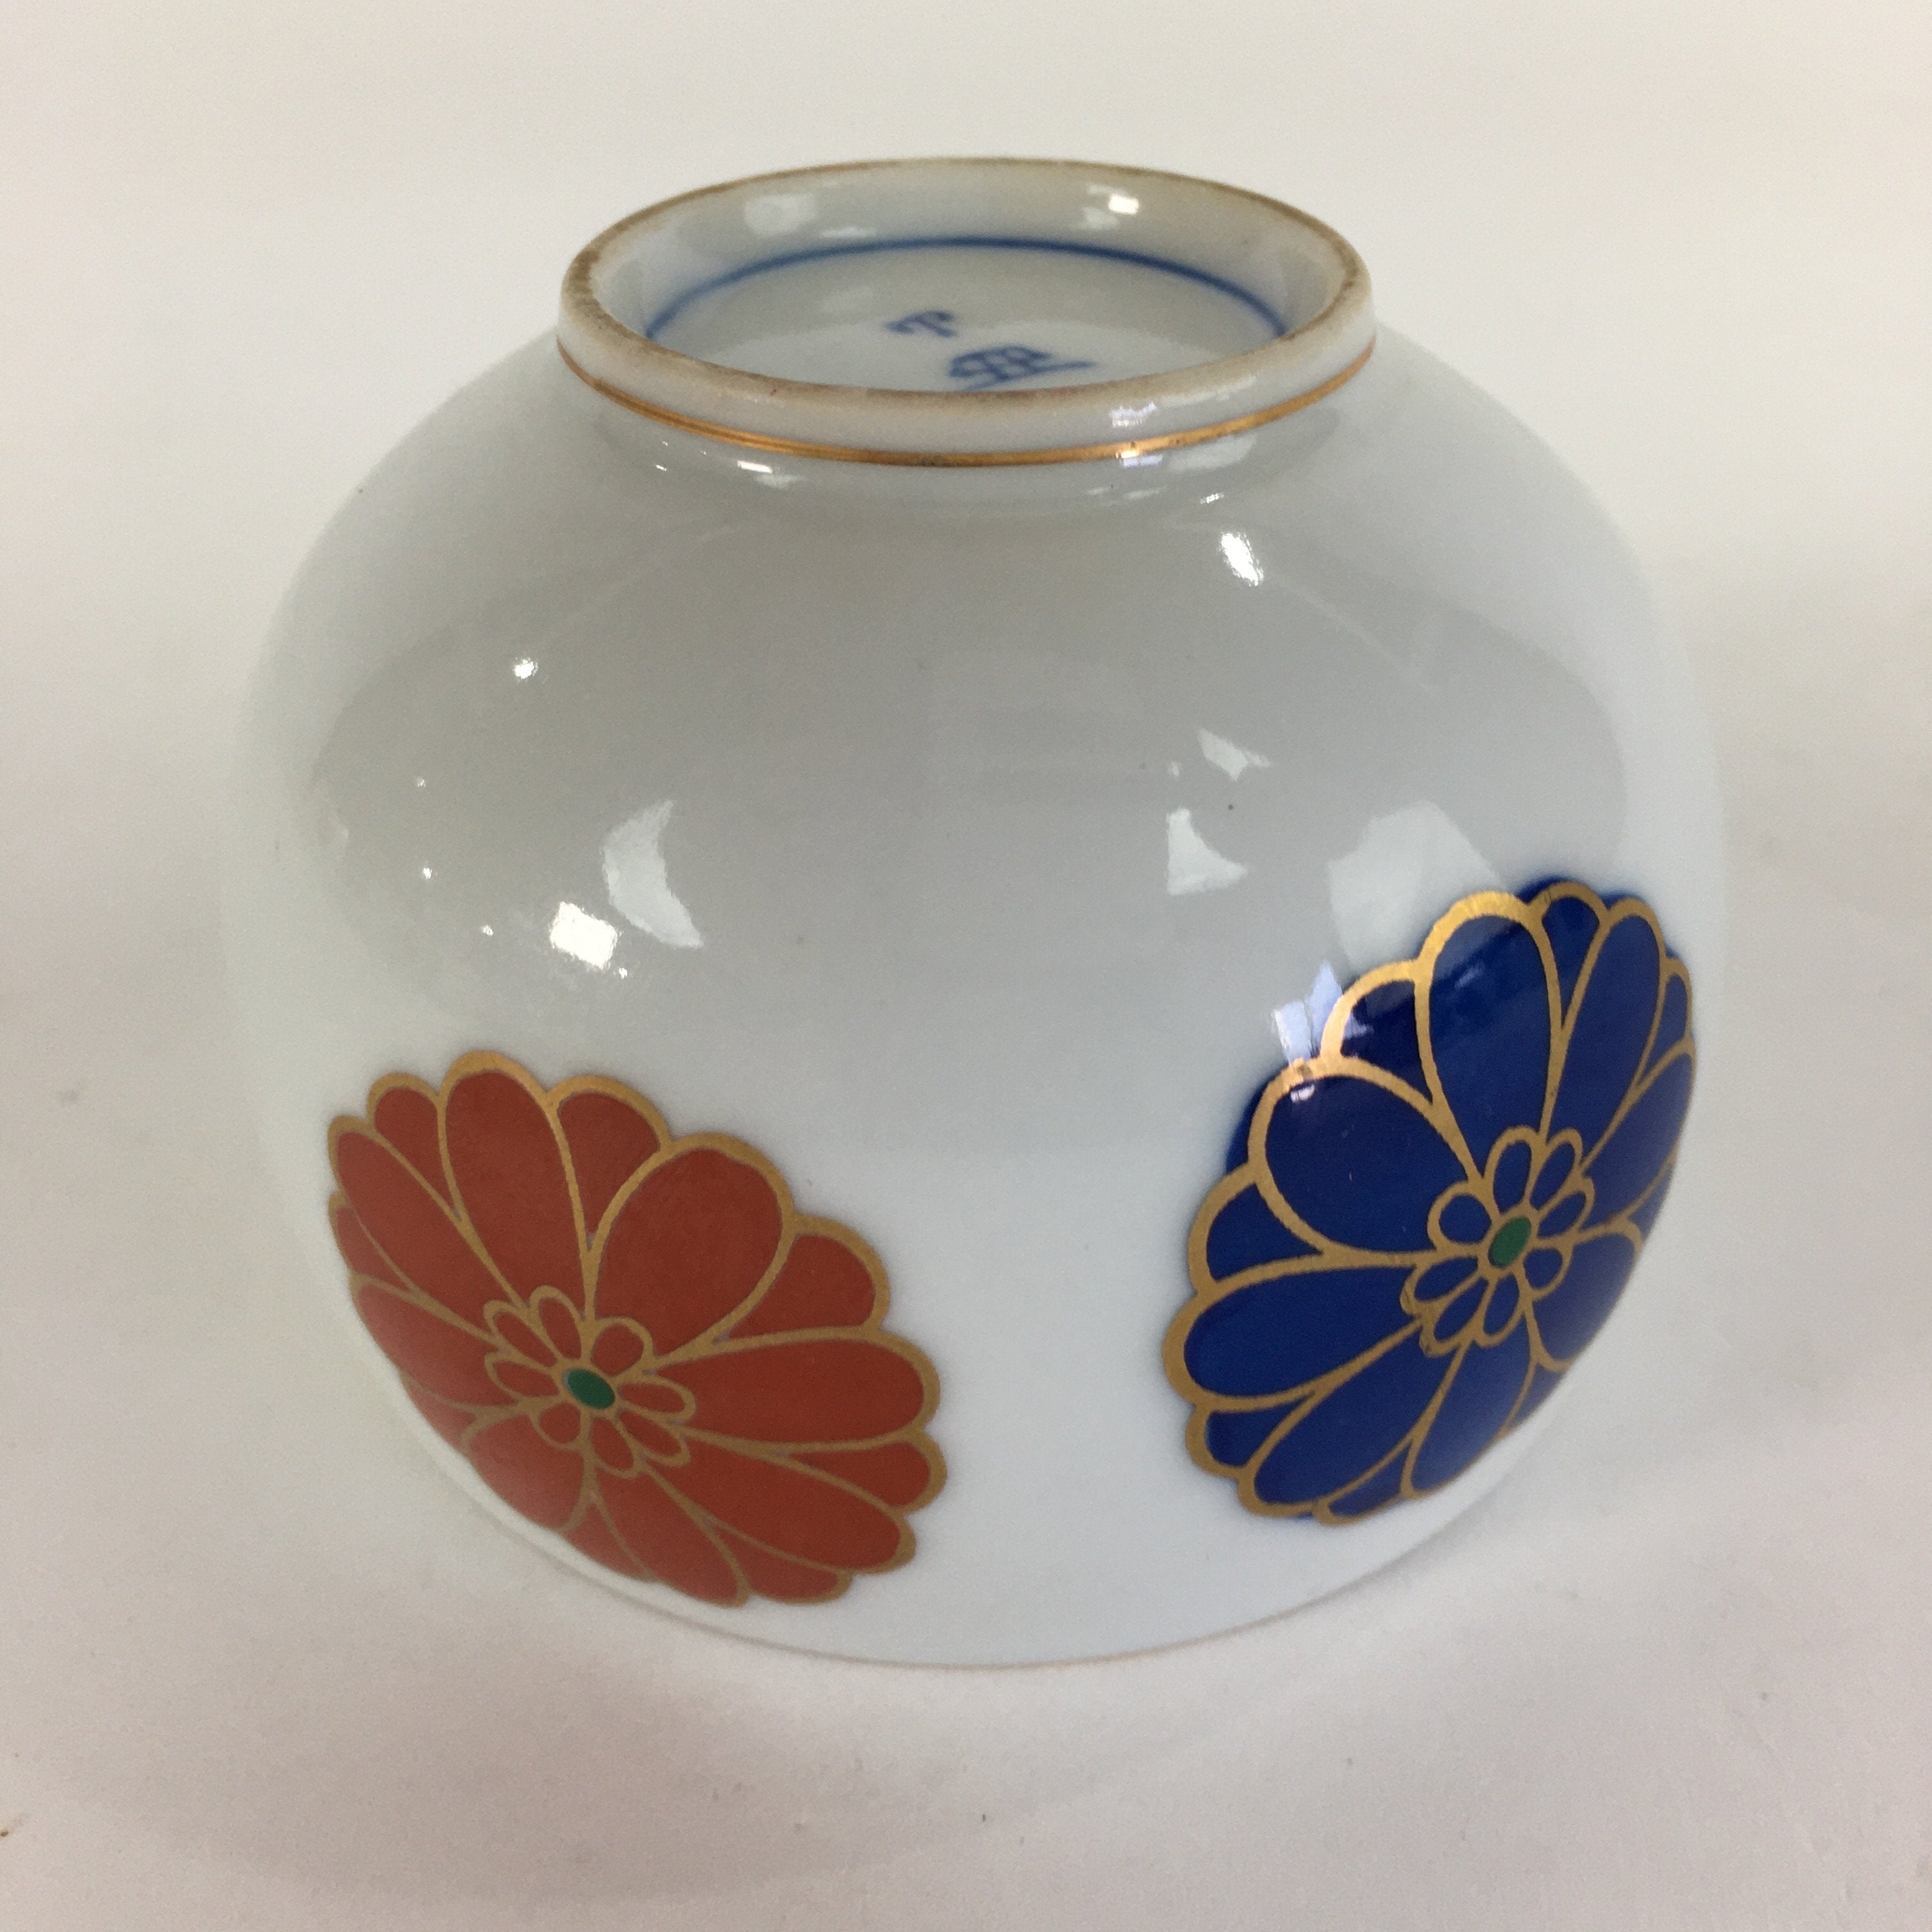 Japanese Porcelain Teacup Yunomi Vtg Chrysanthemum White Sencha TC196